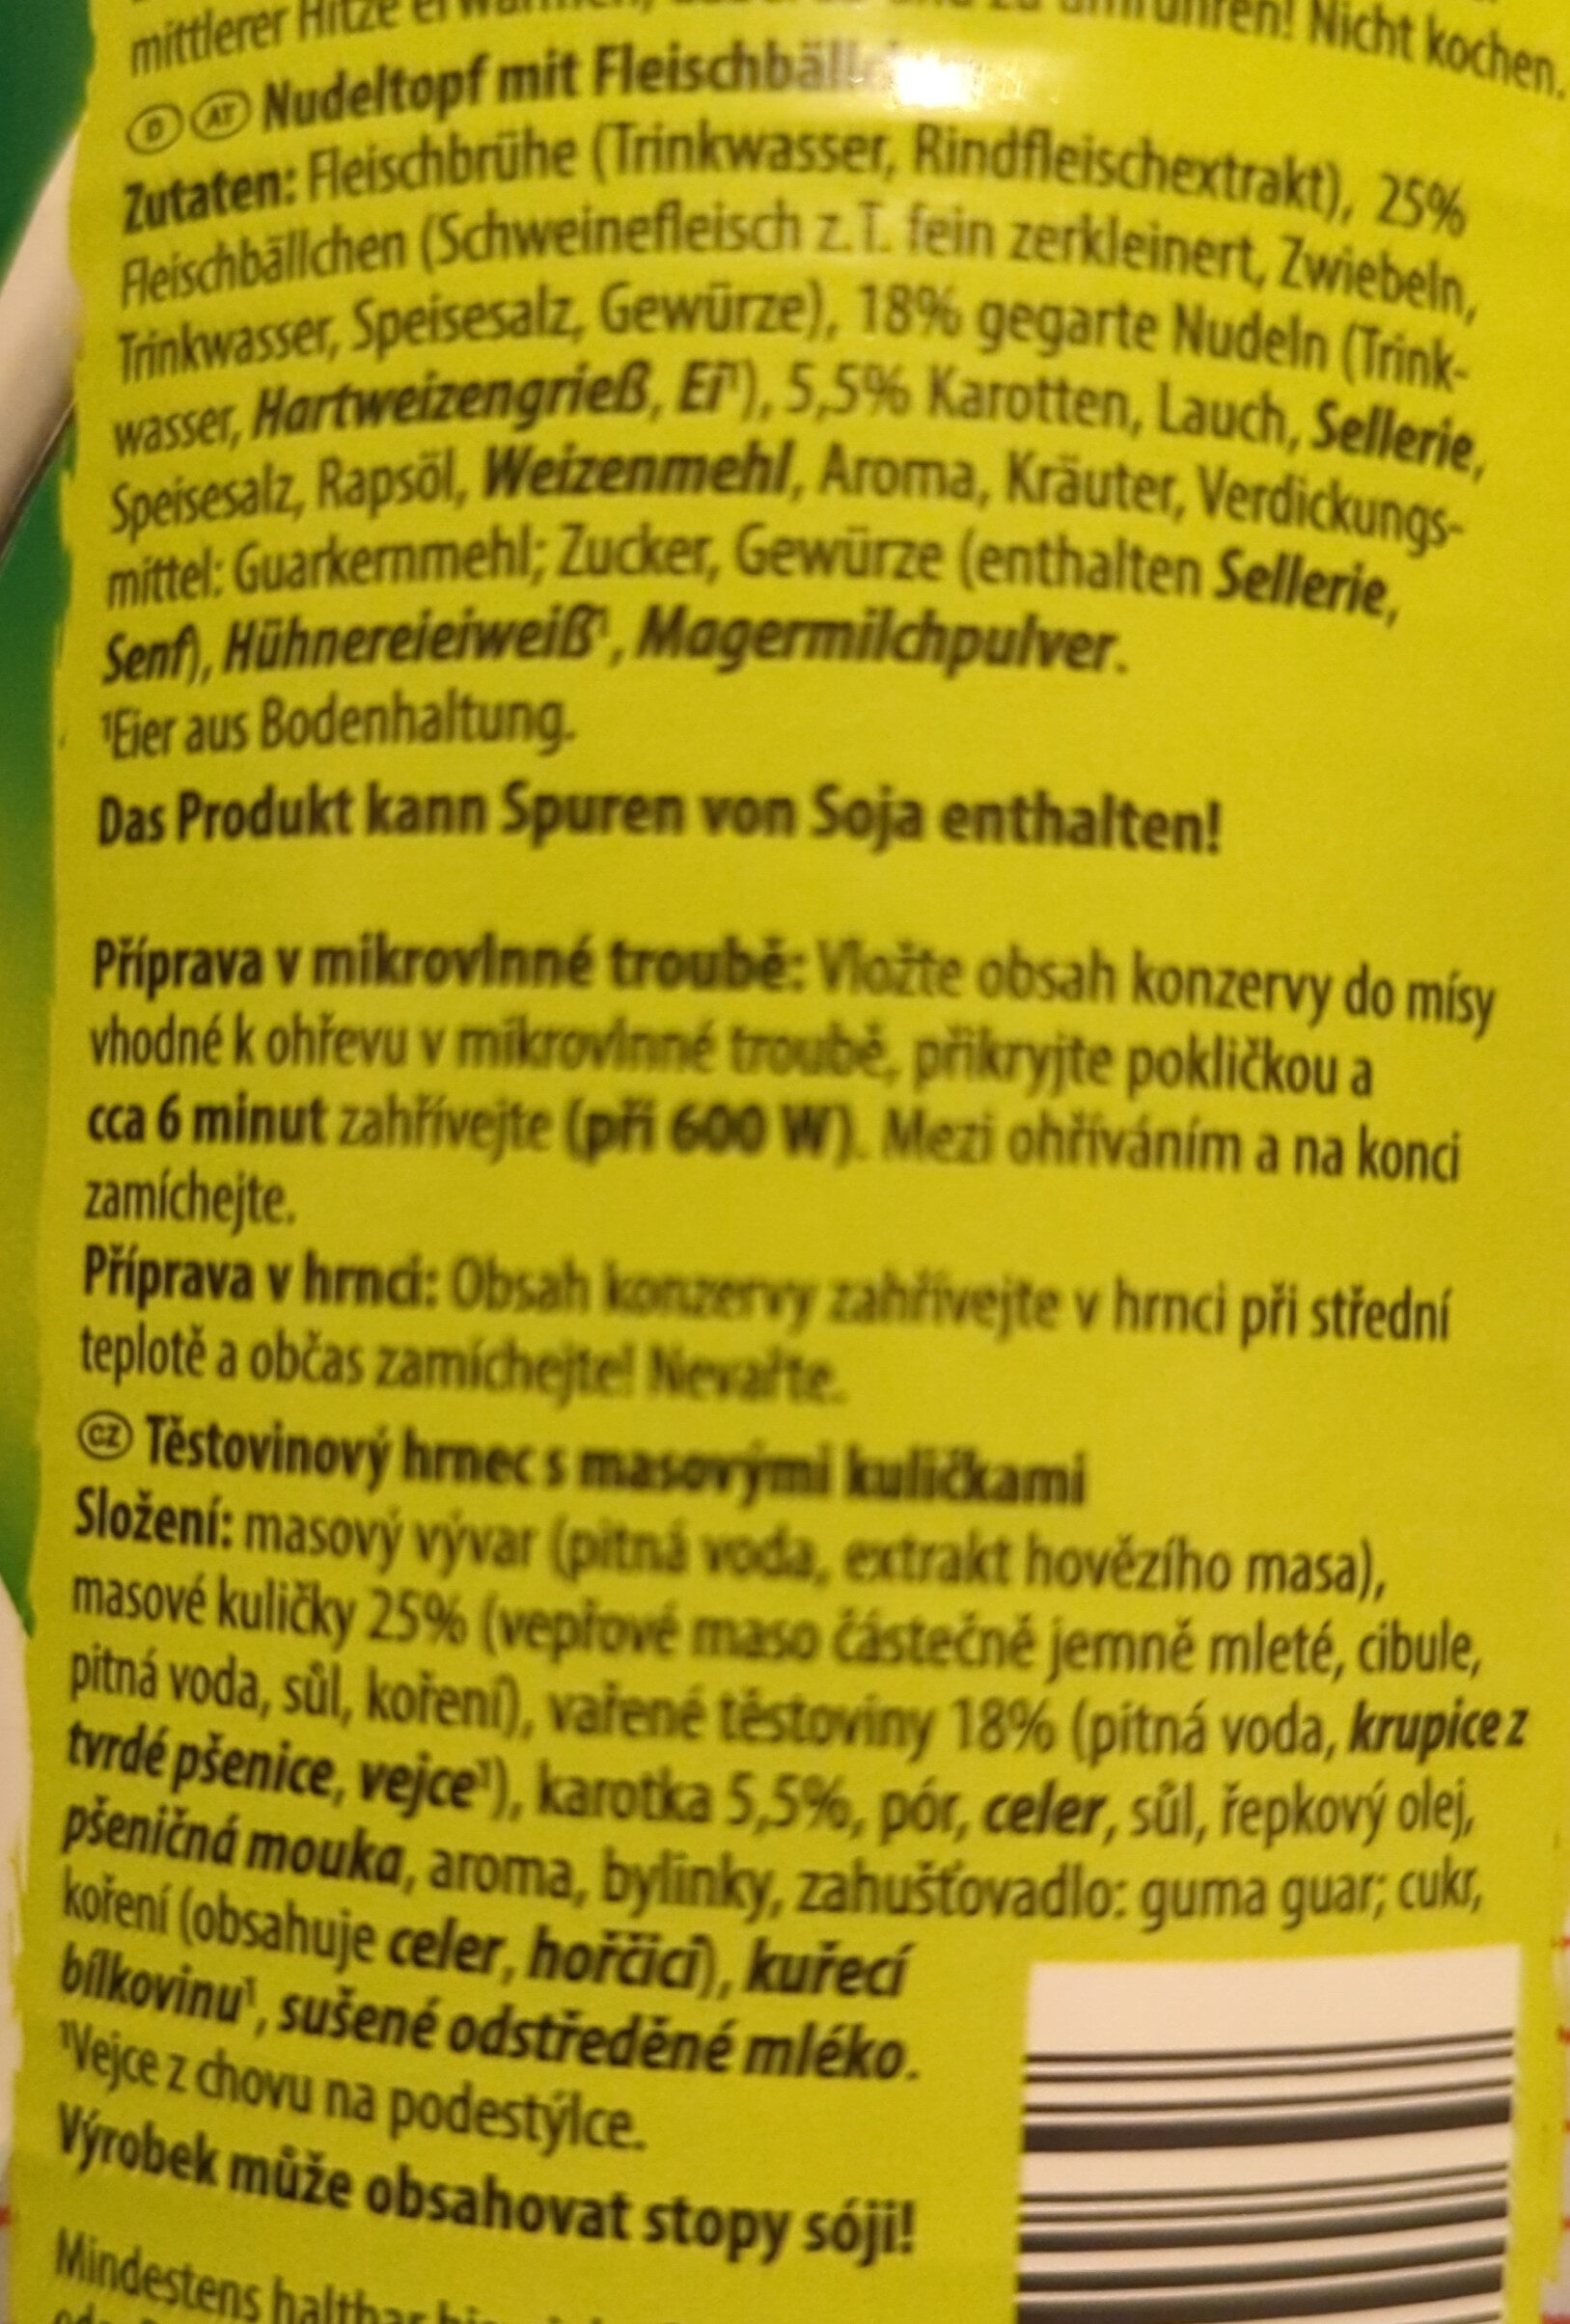 Nudeleintopf - Ingredients - de